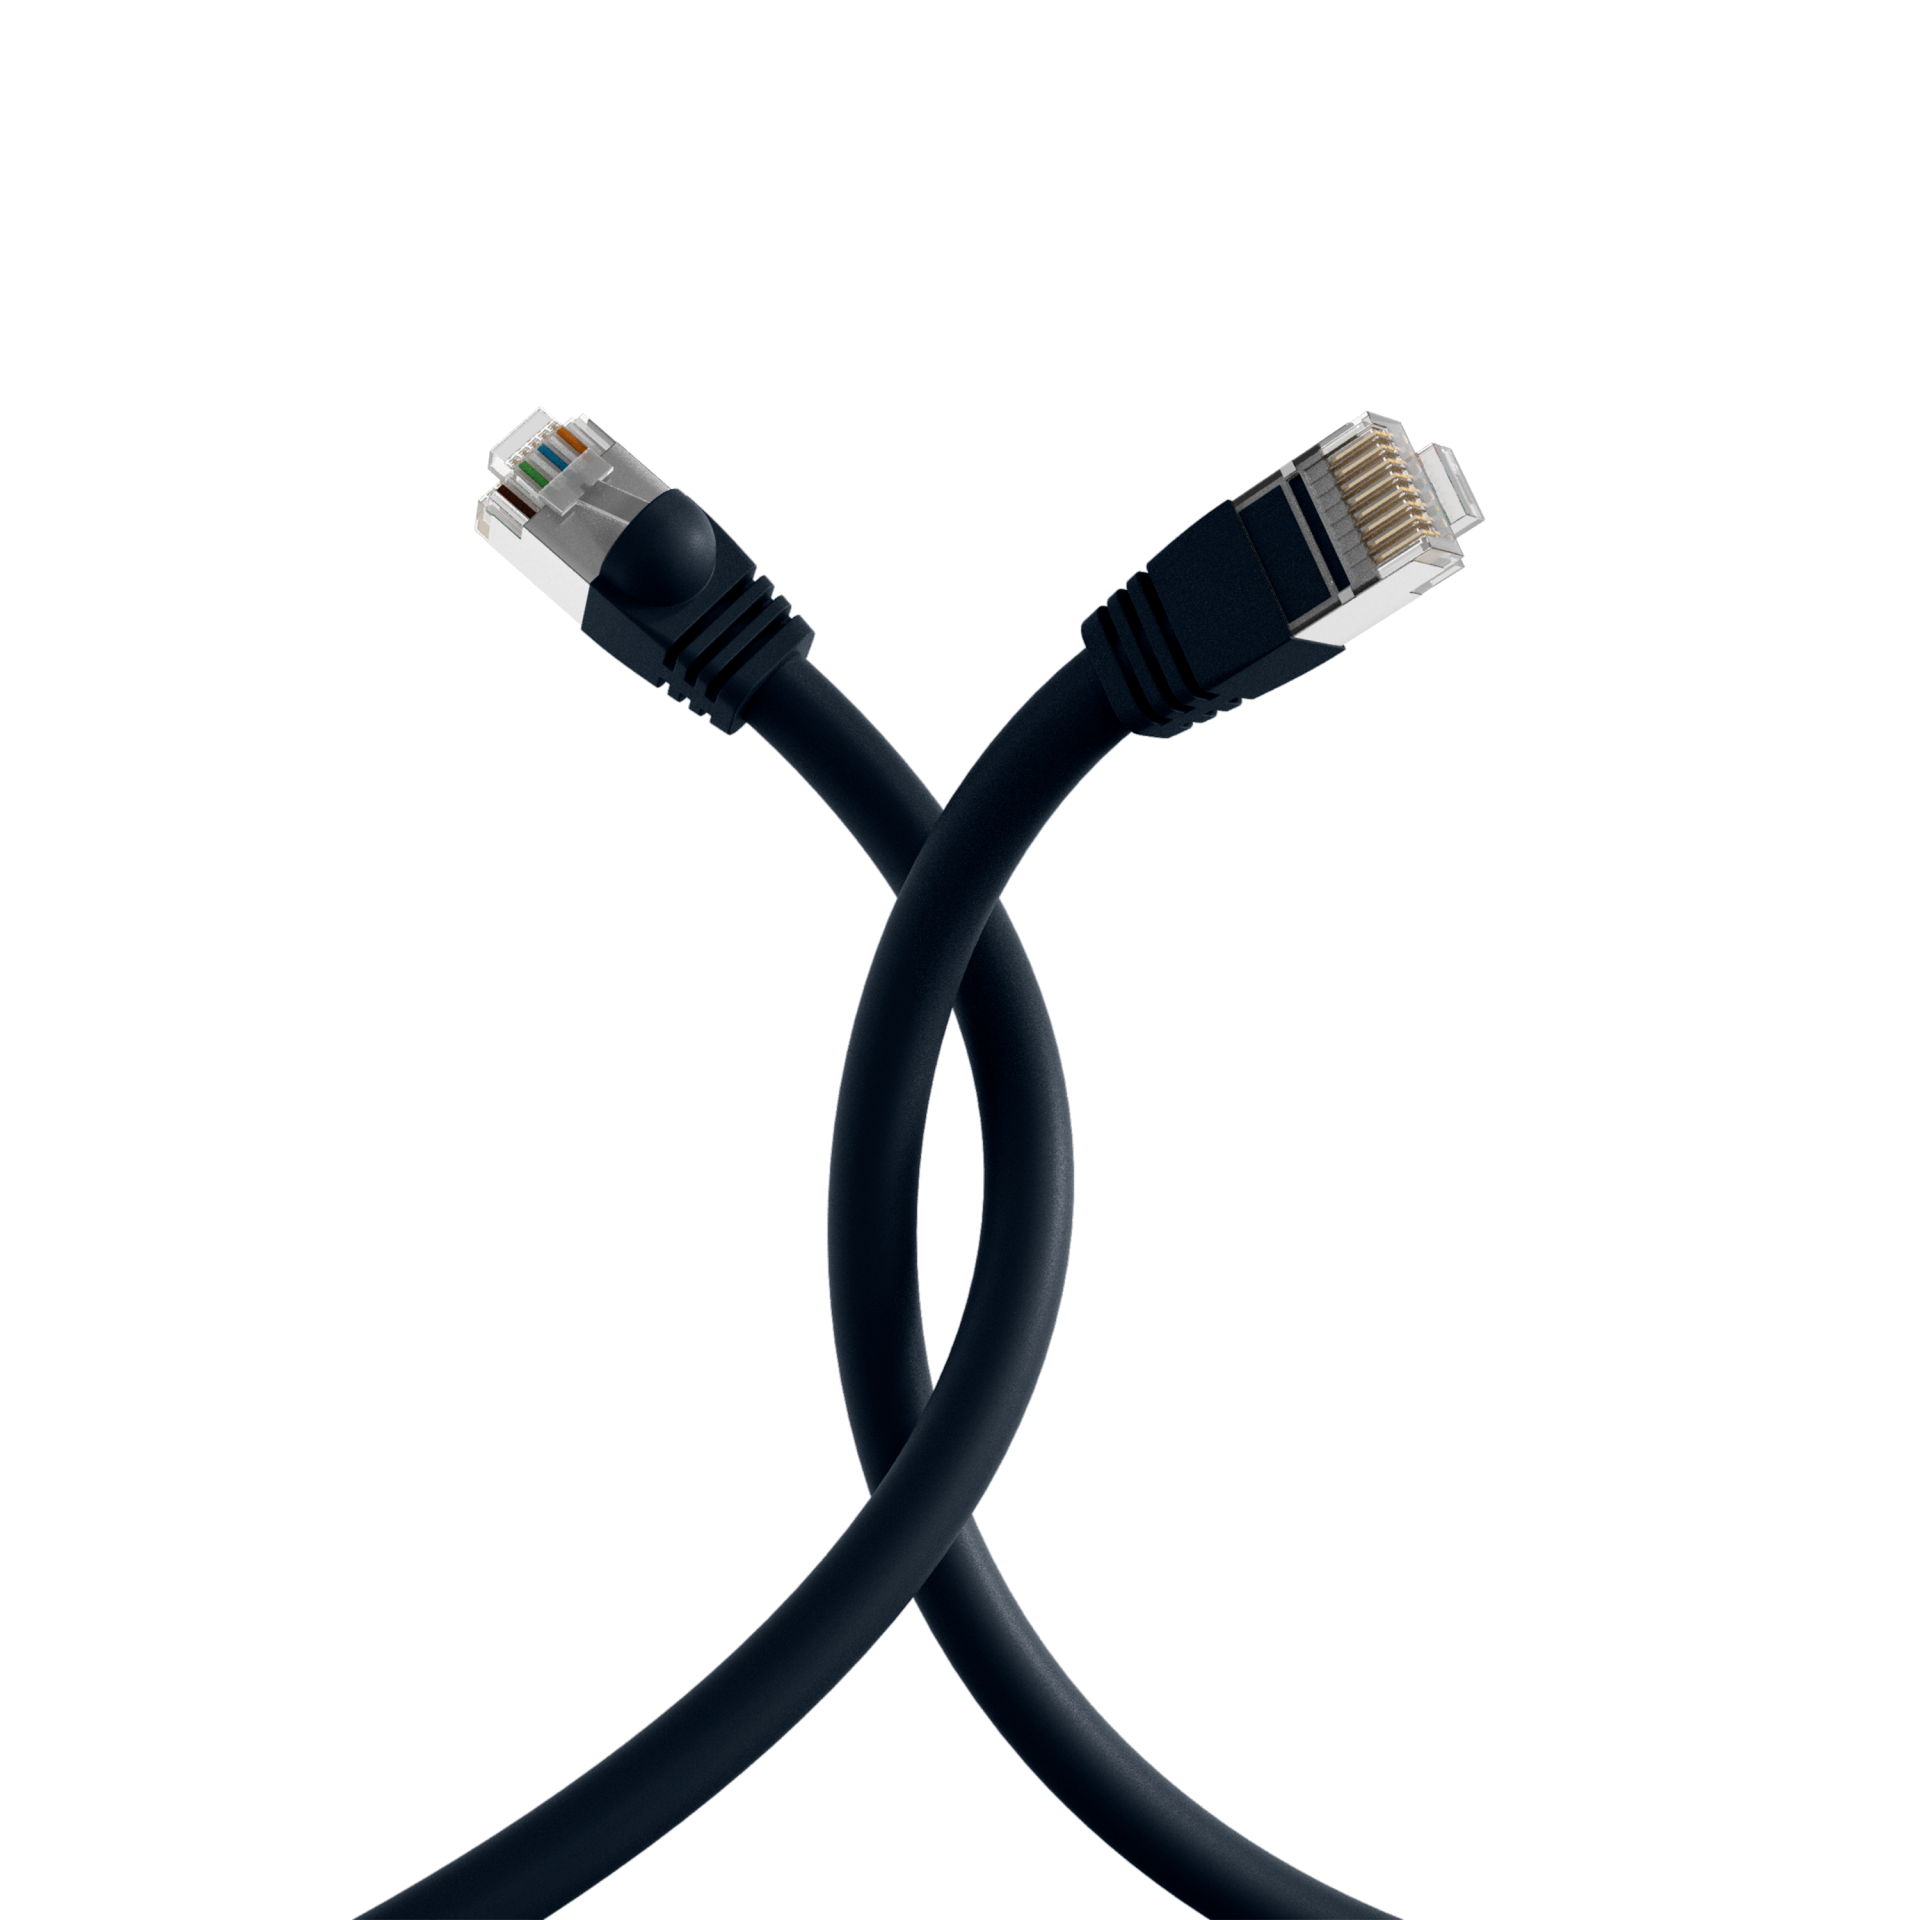 RJ45 Patch cable S/FTP, Cat.6, PVC, short boot, UL, 10m, black